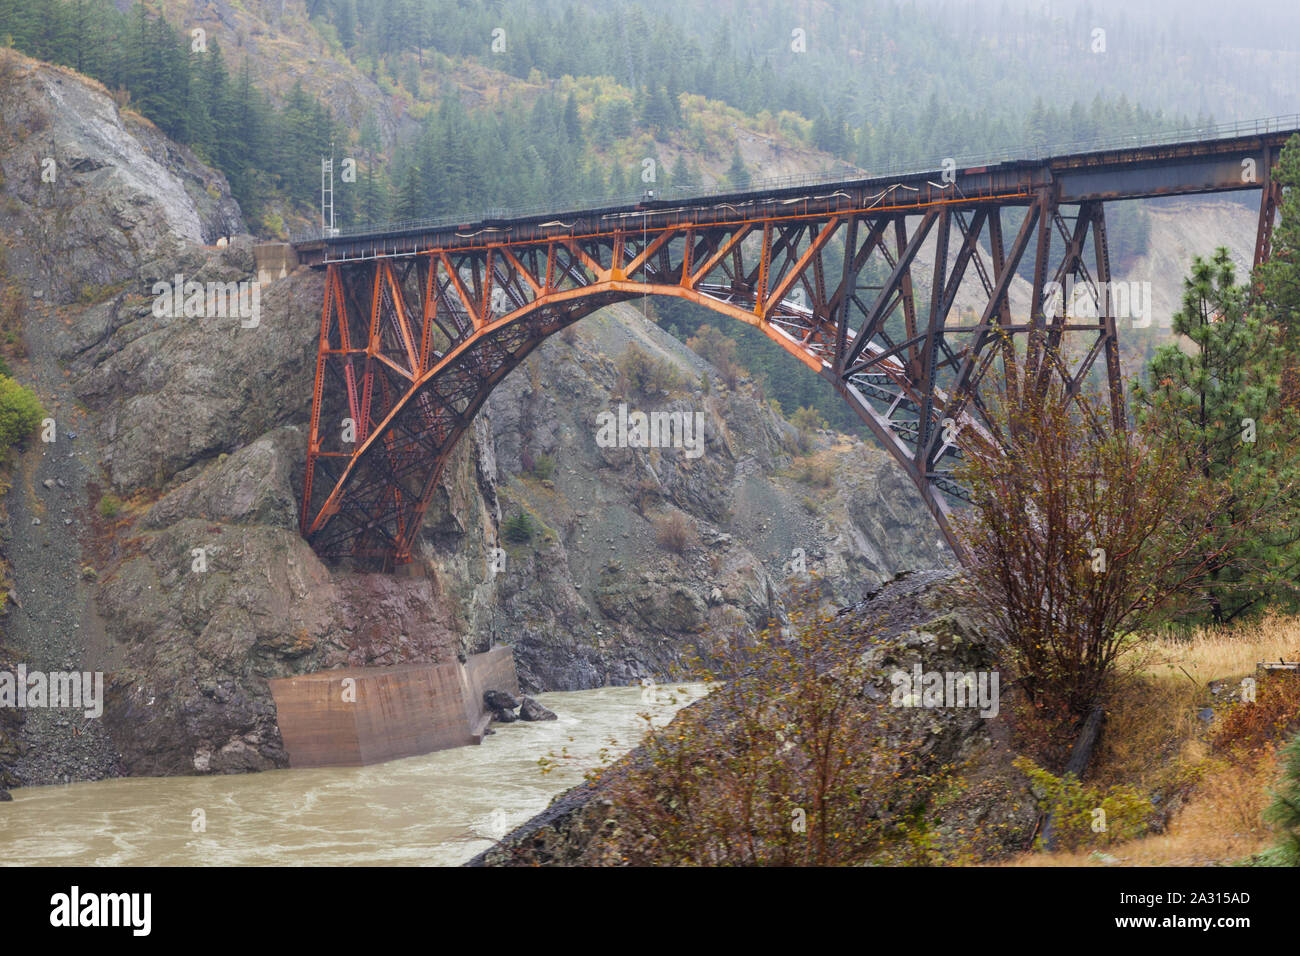 Le pont en arc trussed de la voie ferrée du Canadien National traversant le fleuve Fraser en Colombie-Britannique Passage Cisco Banque D'Images